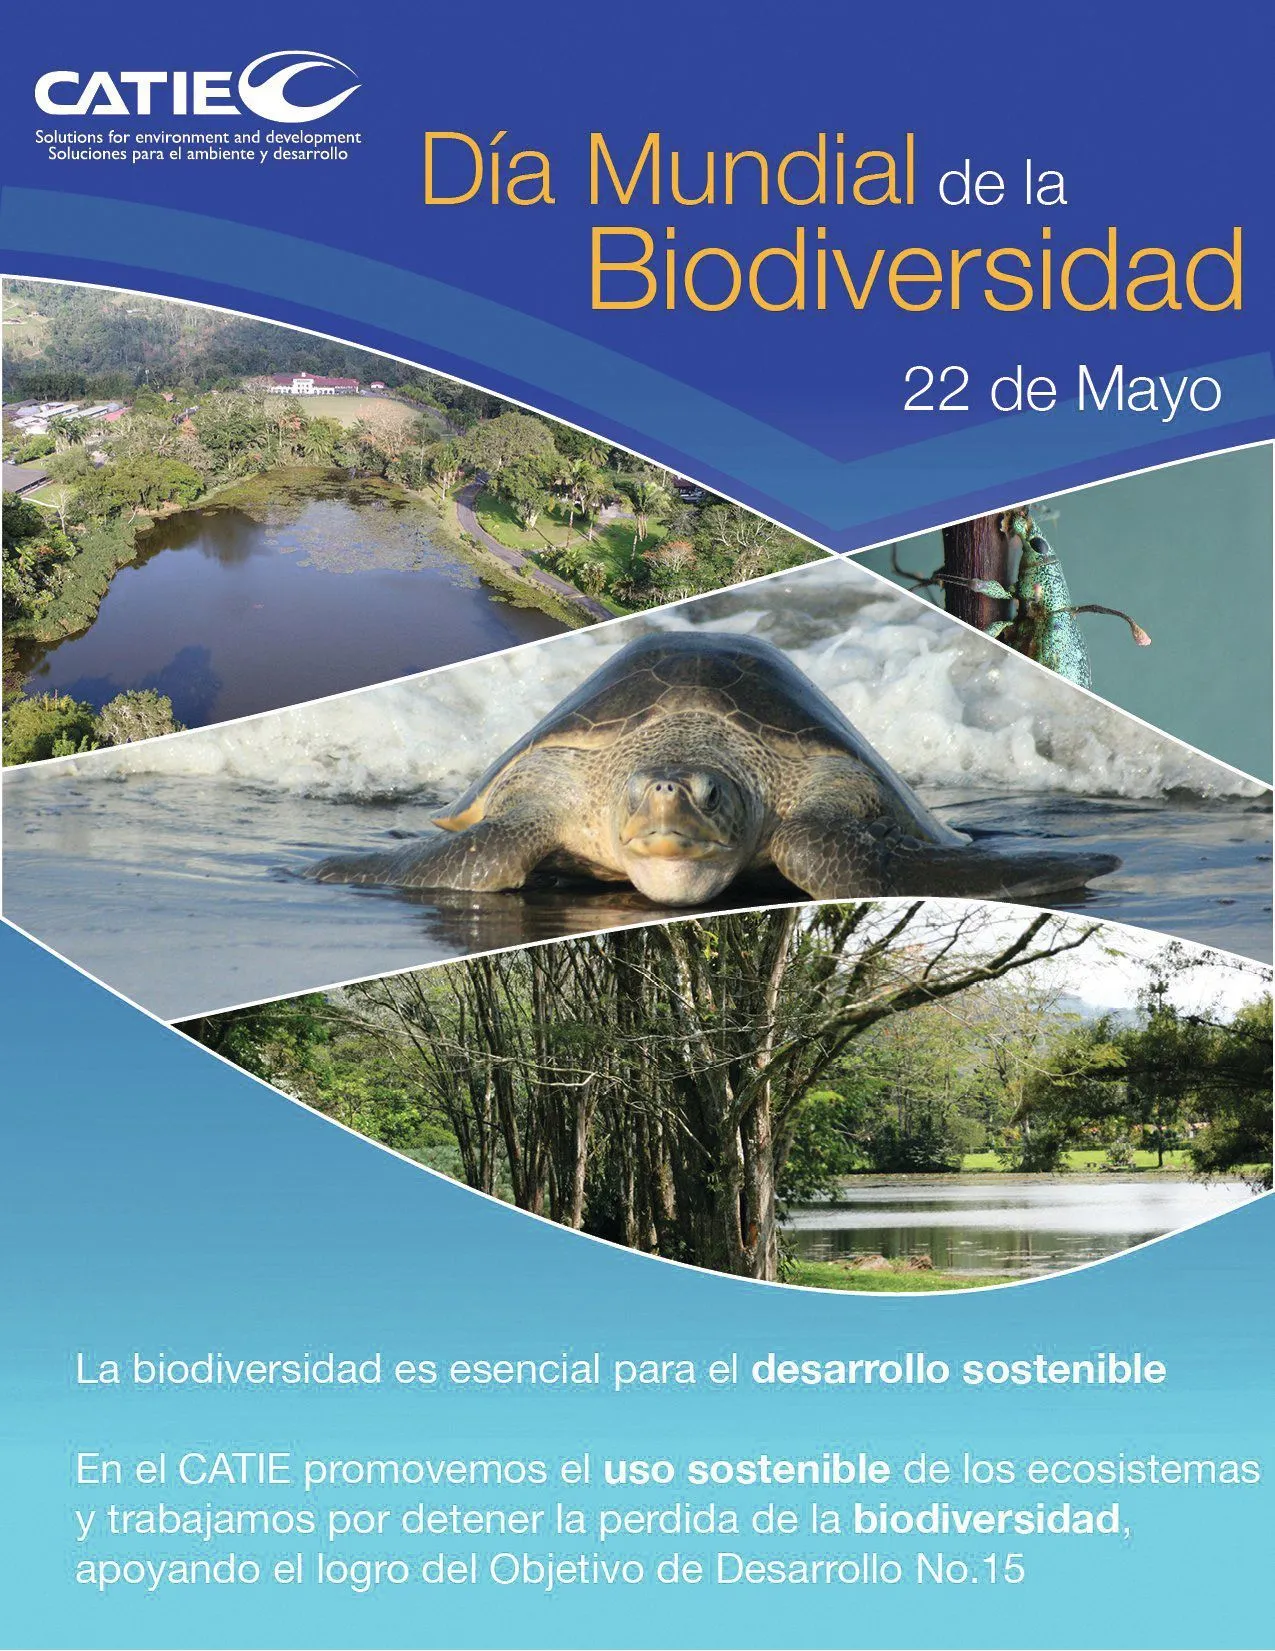 Día Mundial de la Biodiversidad, 2012.